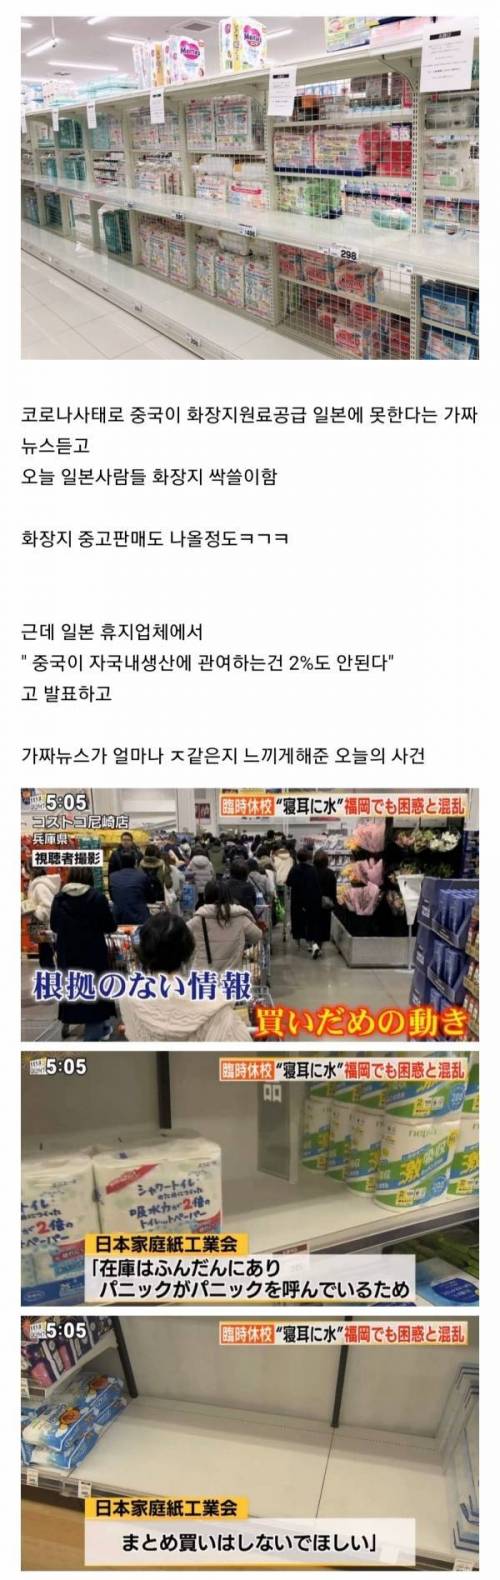 일본 가짜뉴스의 폐해.jpg